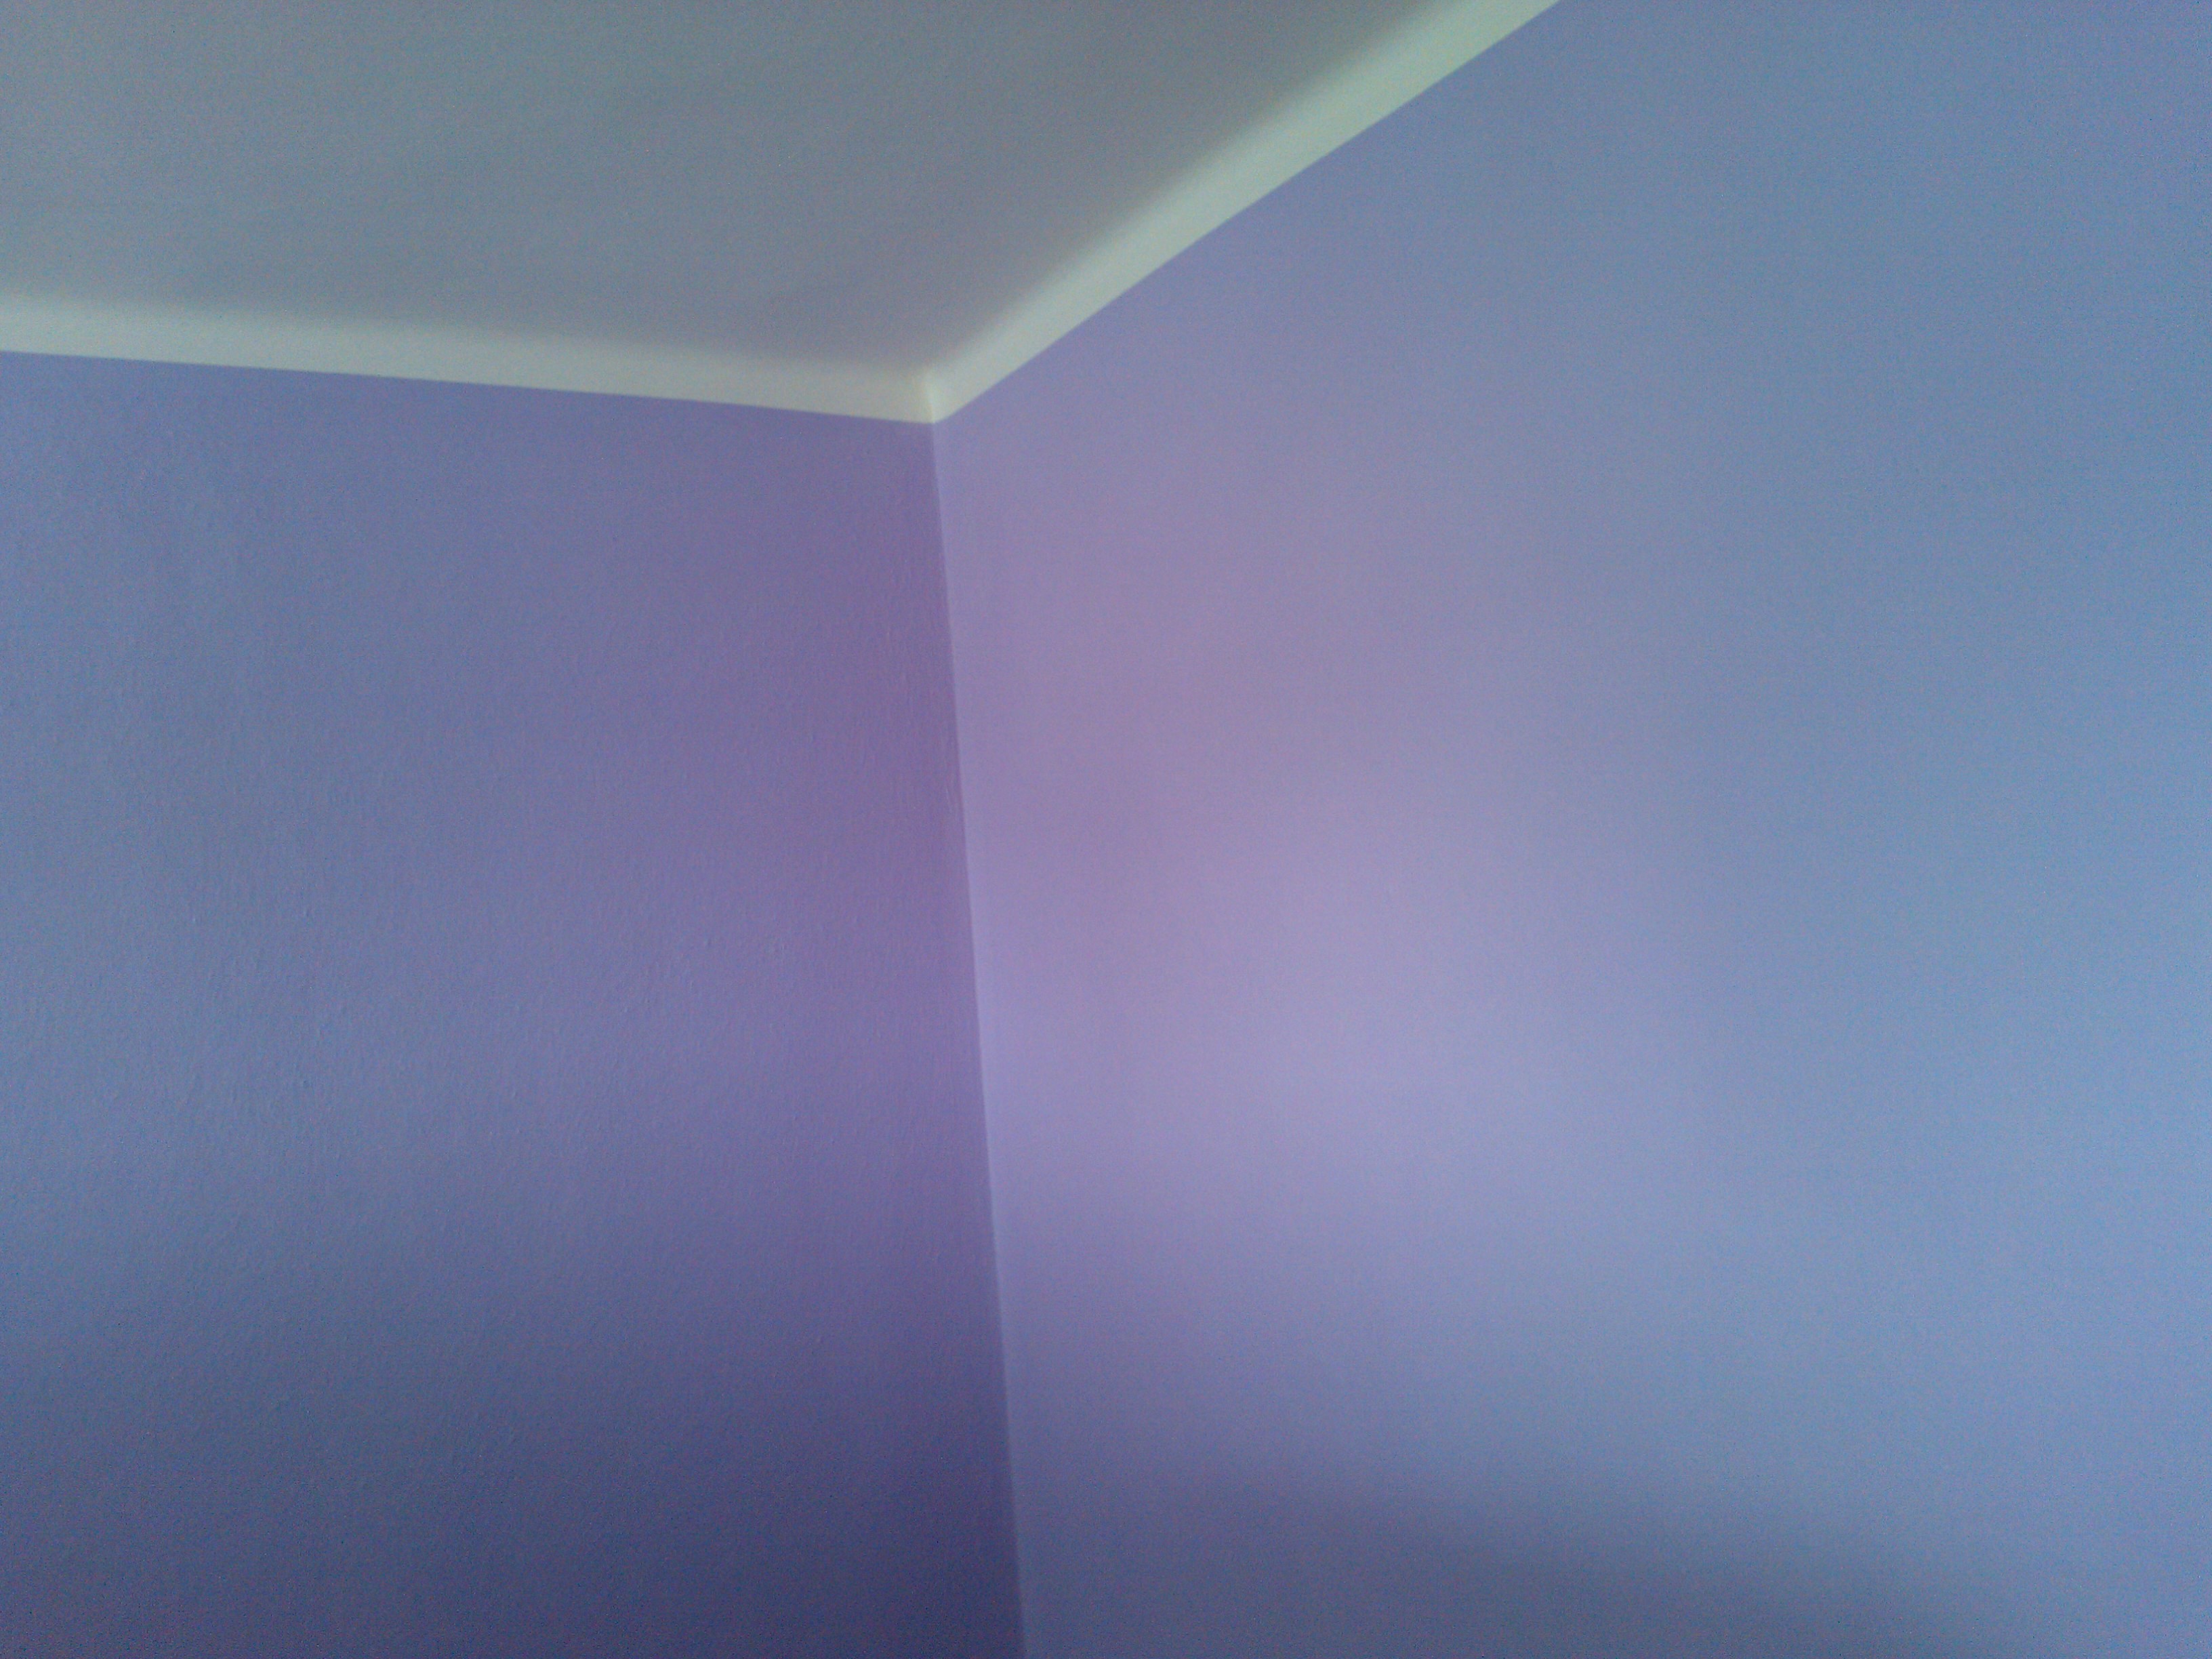 Malování pokoje fialovou barvou